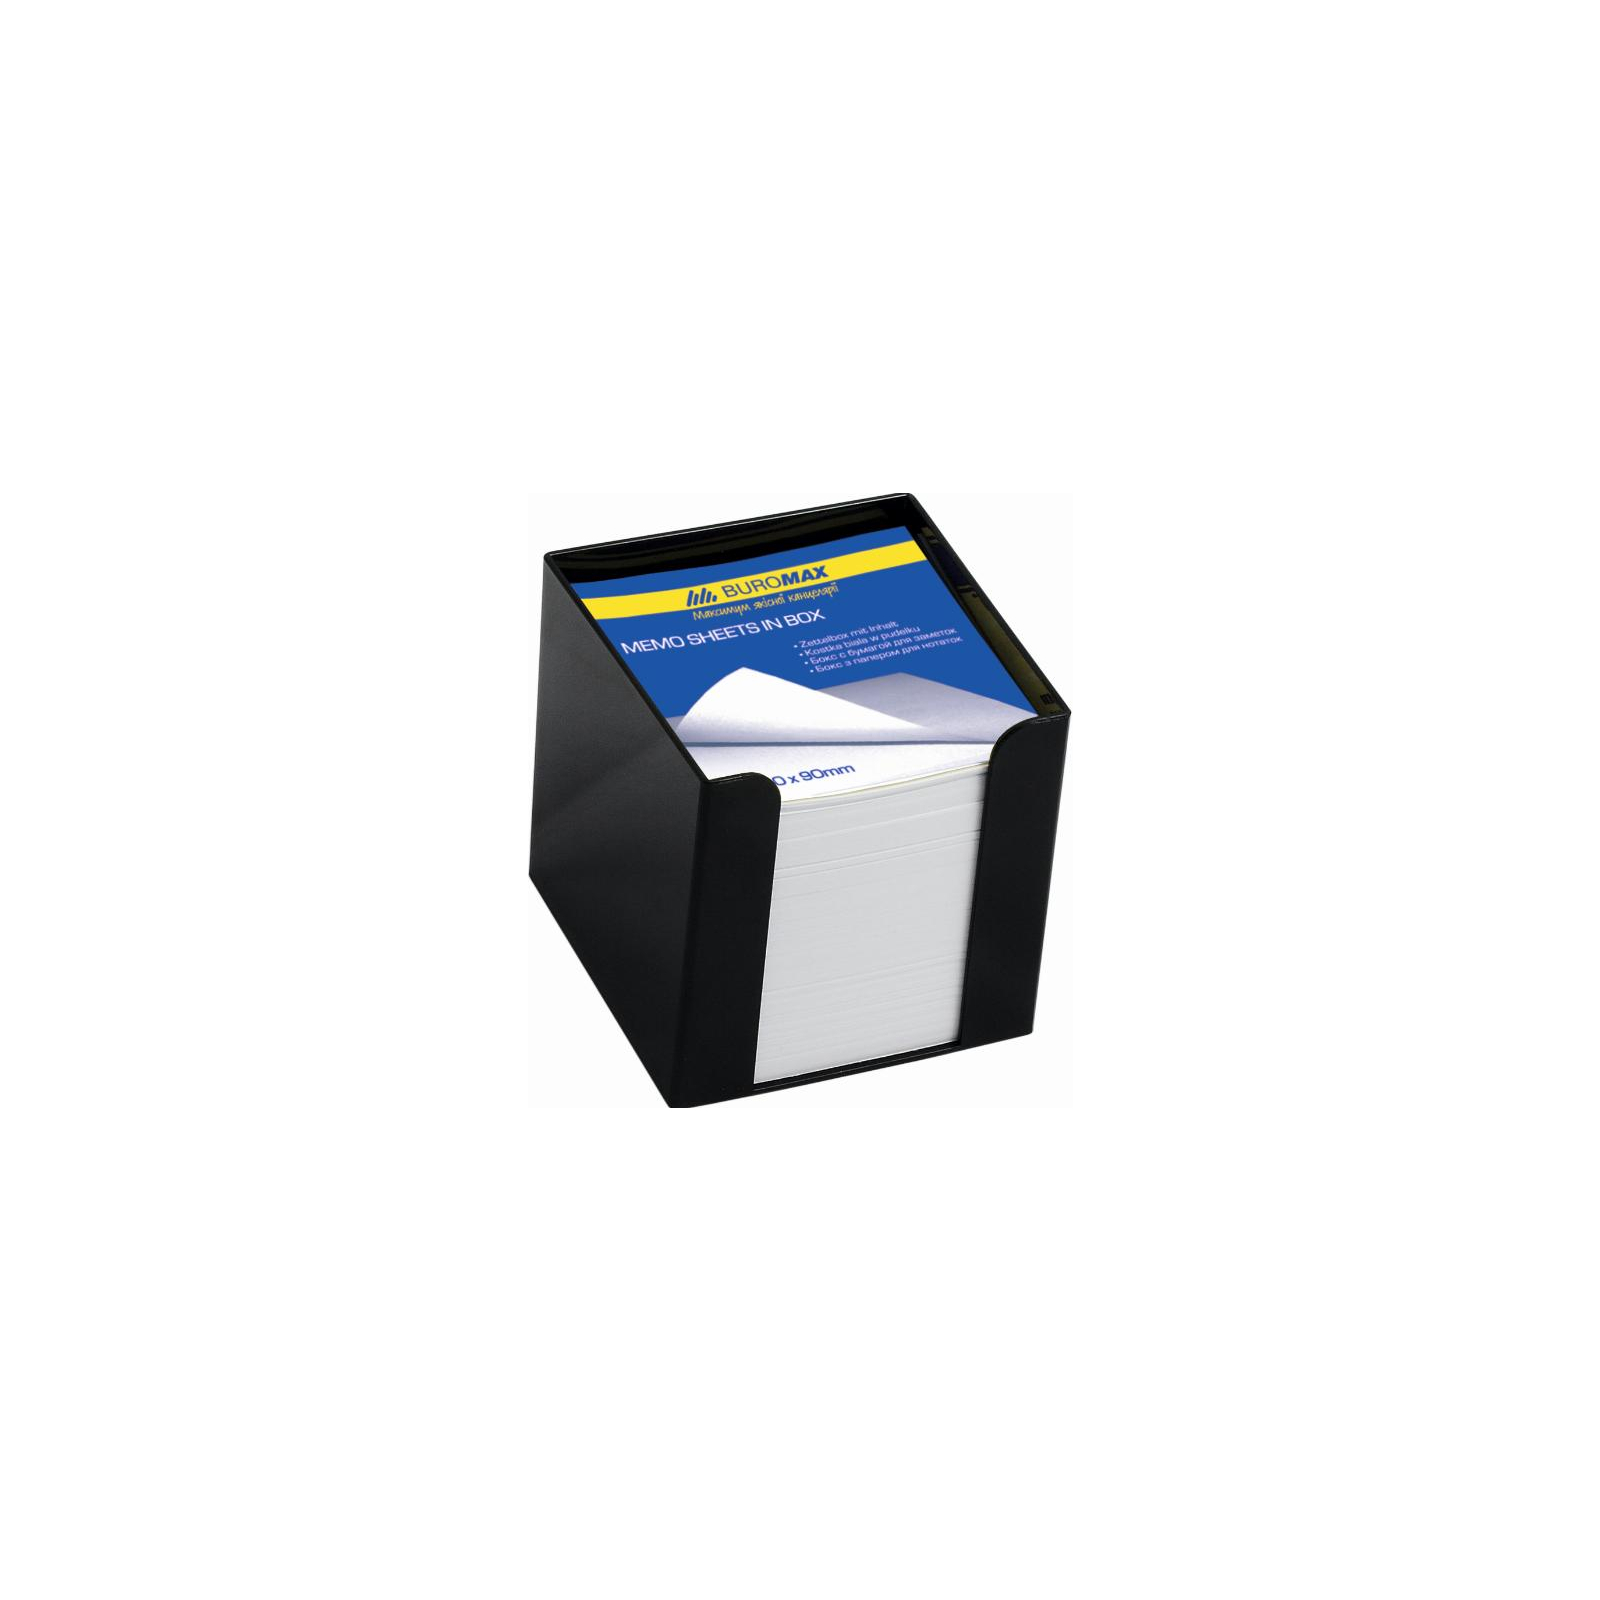 Подставка-куб для писем и бумаг Buromax 90x90x90 мм, black, with paper (BM.2290-01)